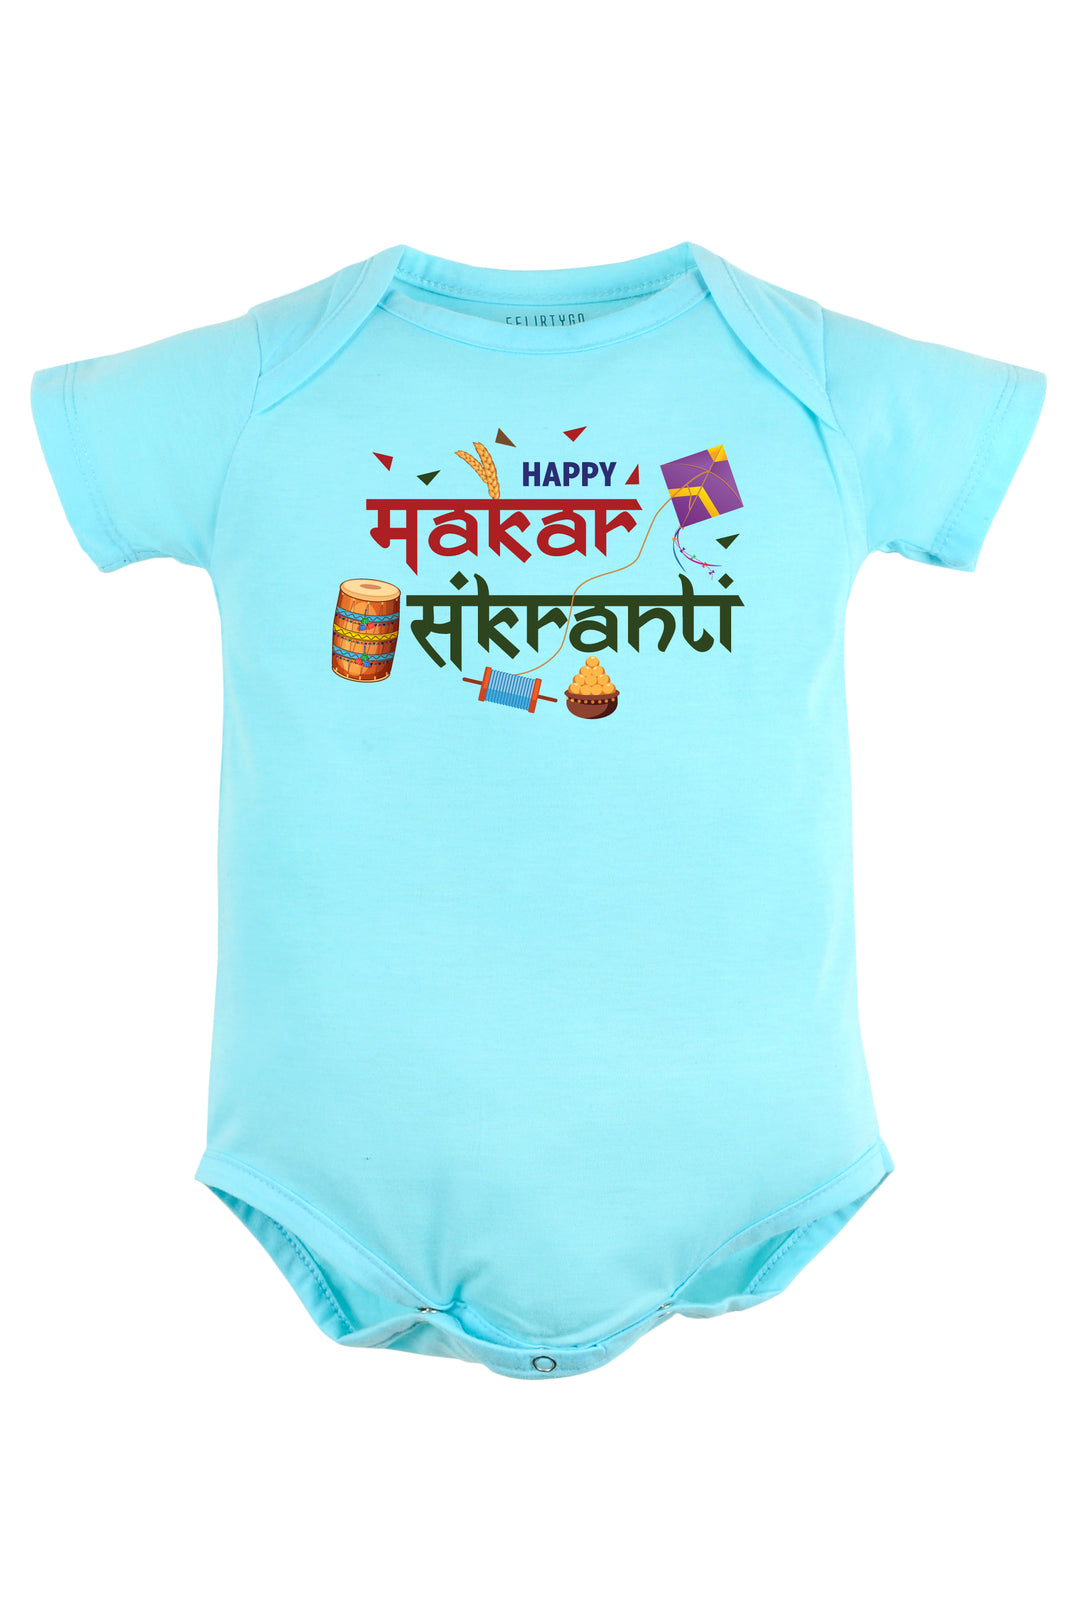 Happy Makar Sankranti Baby Romper | Onesies